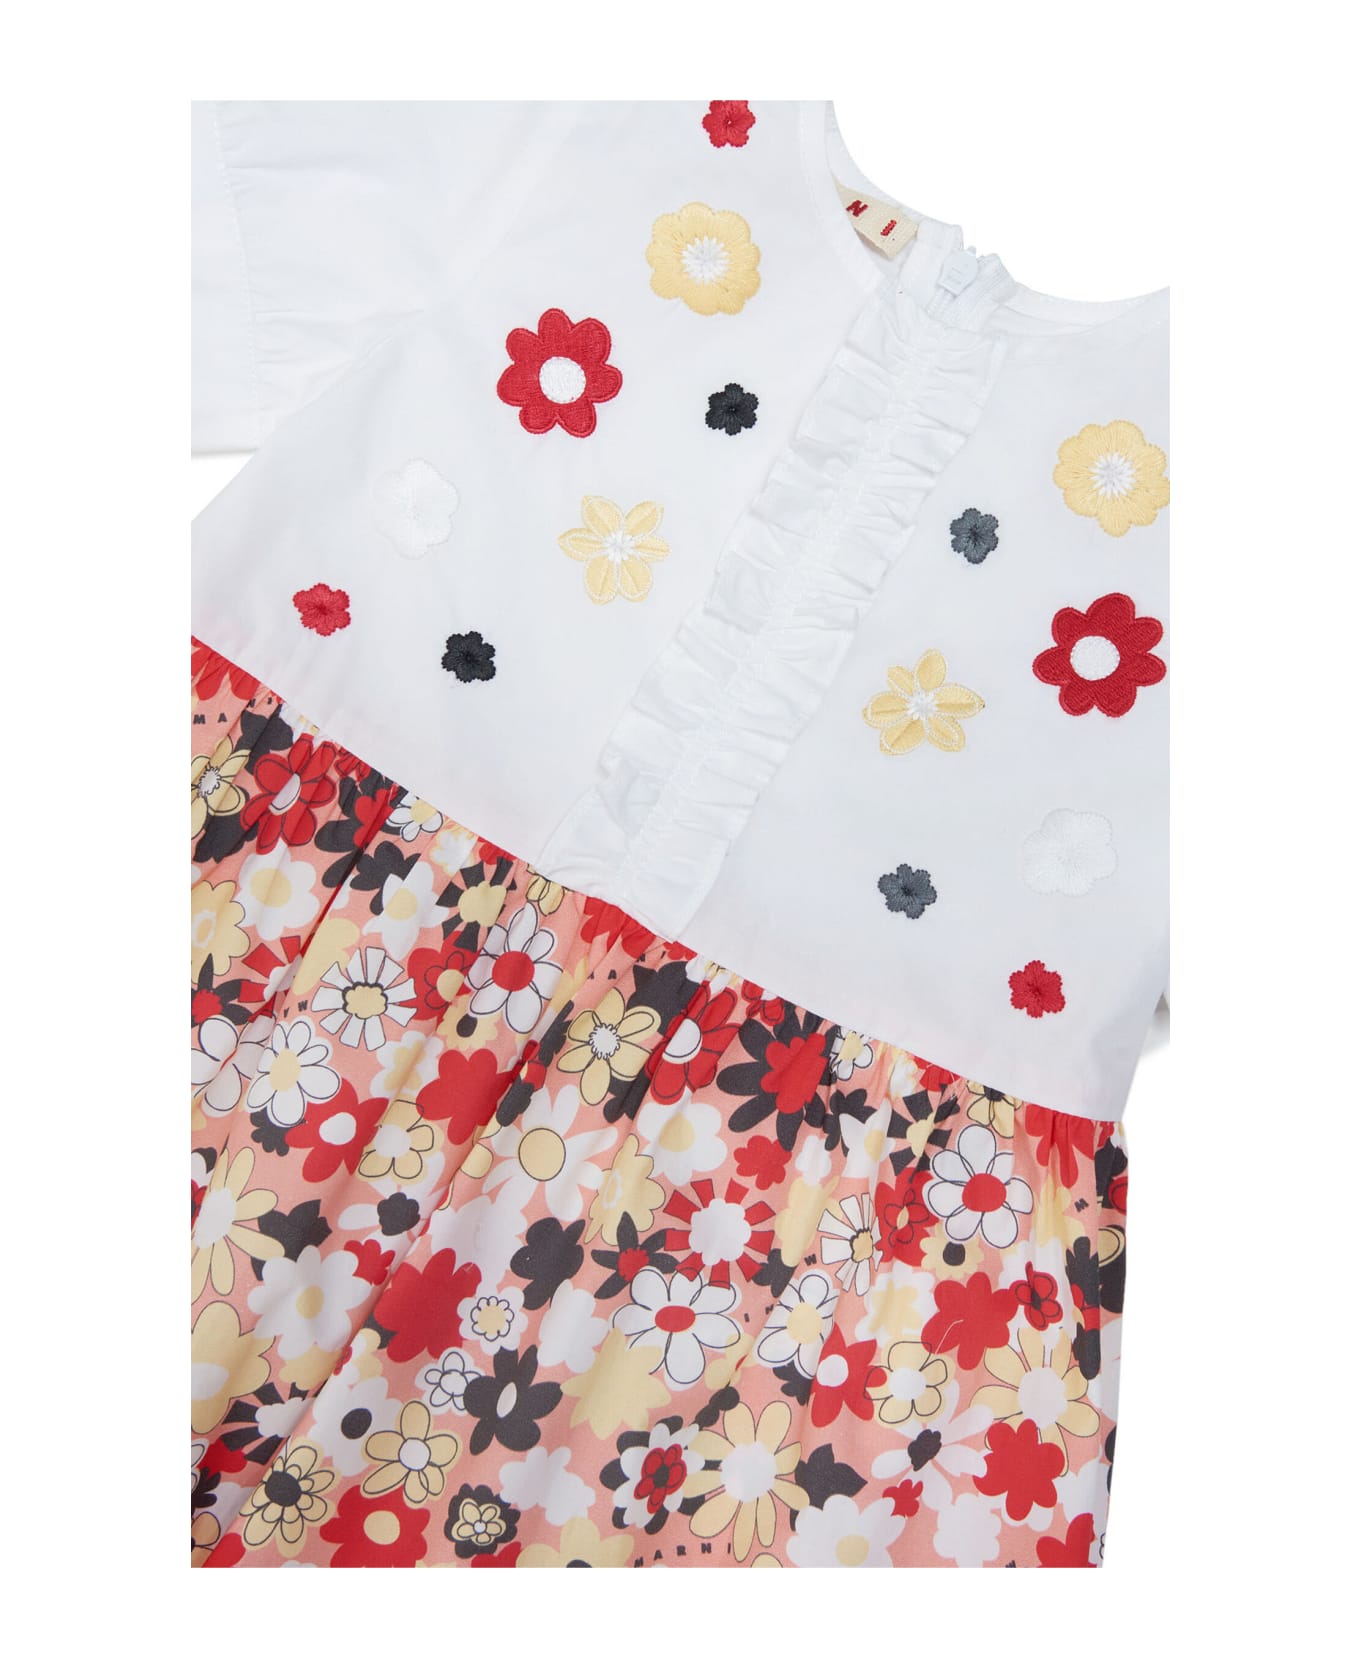 Marni Md29b Dress Marni Dress In Poplin With Allover Flowers Pattern - Blossom